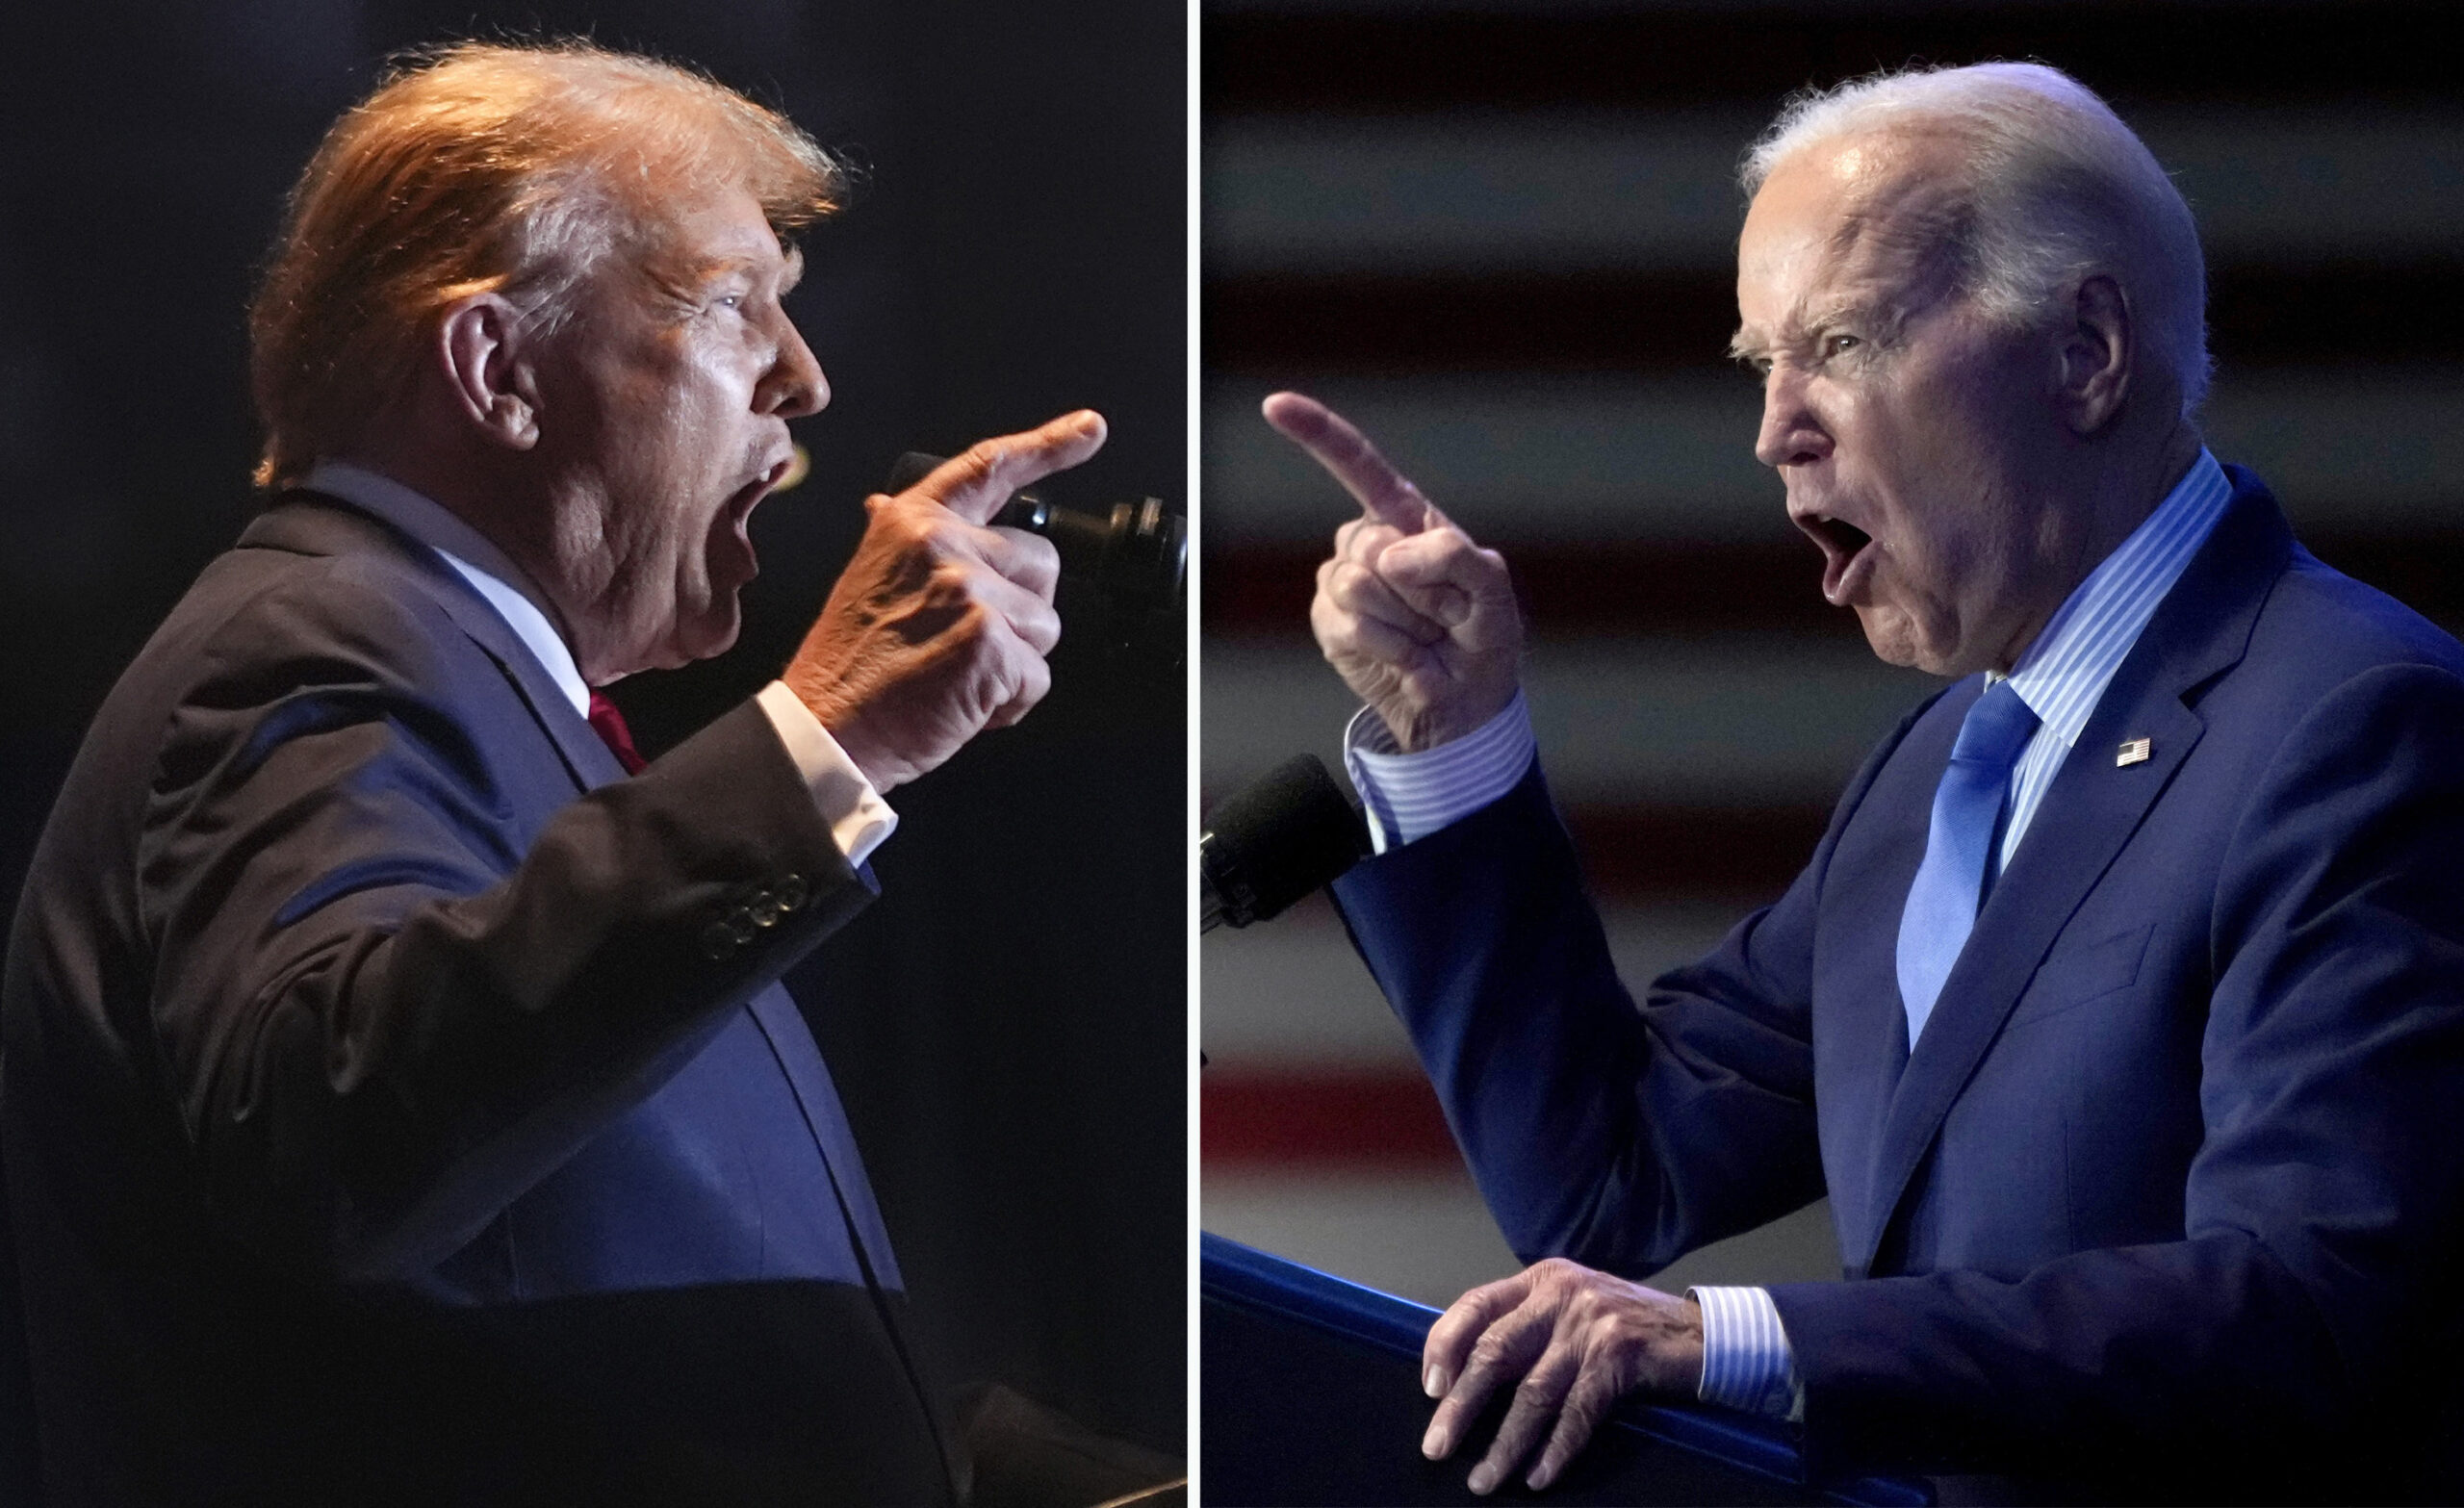 Donald Trump aceptó debatir con Joe Biden, pero en la Casa Blanca: “Eso sería muy cómodo” – El Diario NY